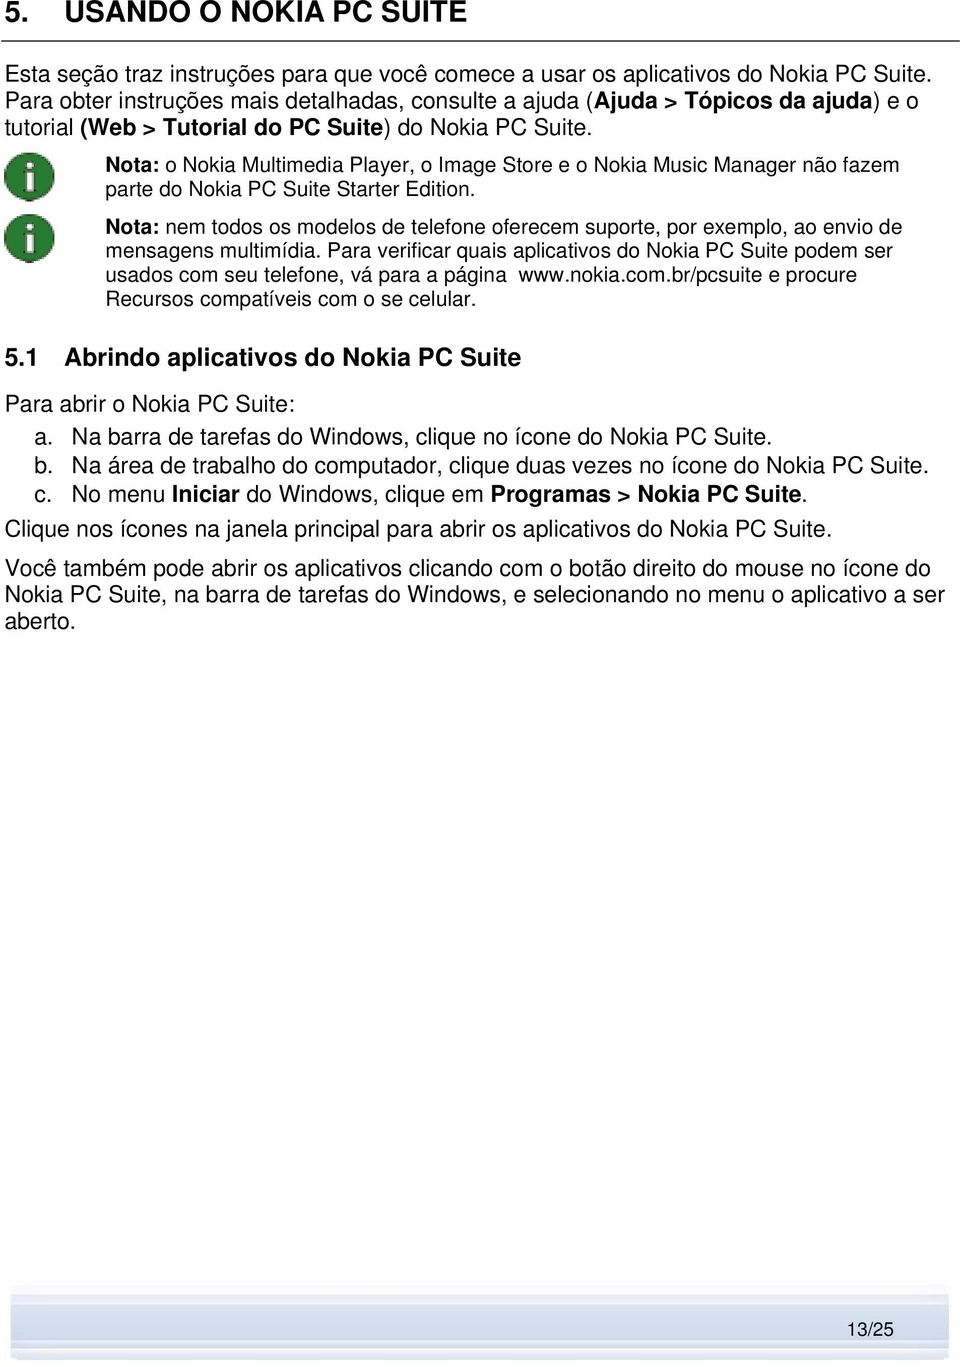 Nota: o Nokia Multimedia Player, o Image Store e o Nokia Music Manager não fazem parte do Nokia PC Suite Starter Edition.